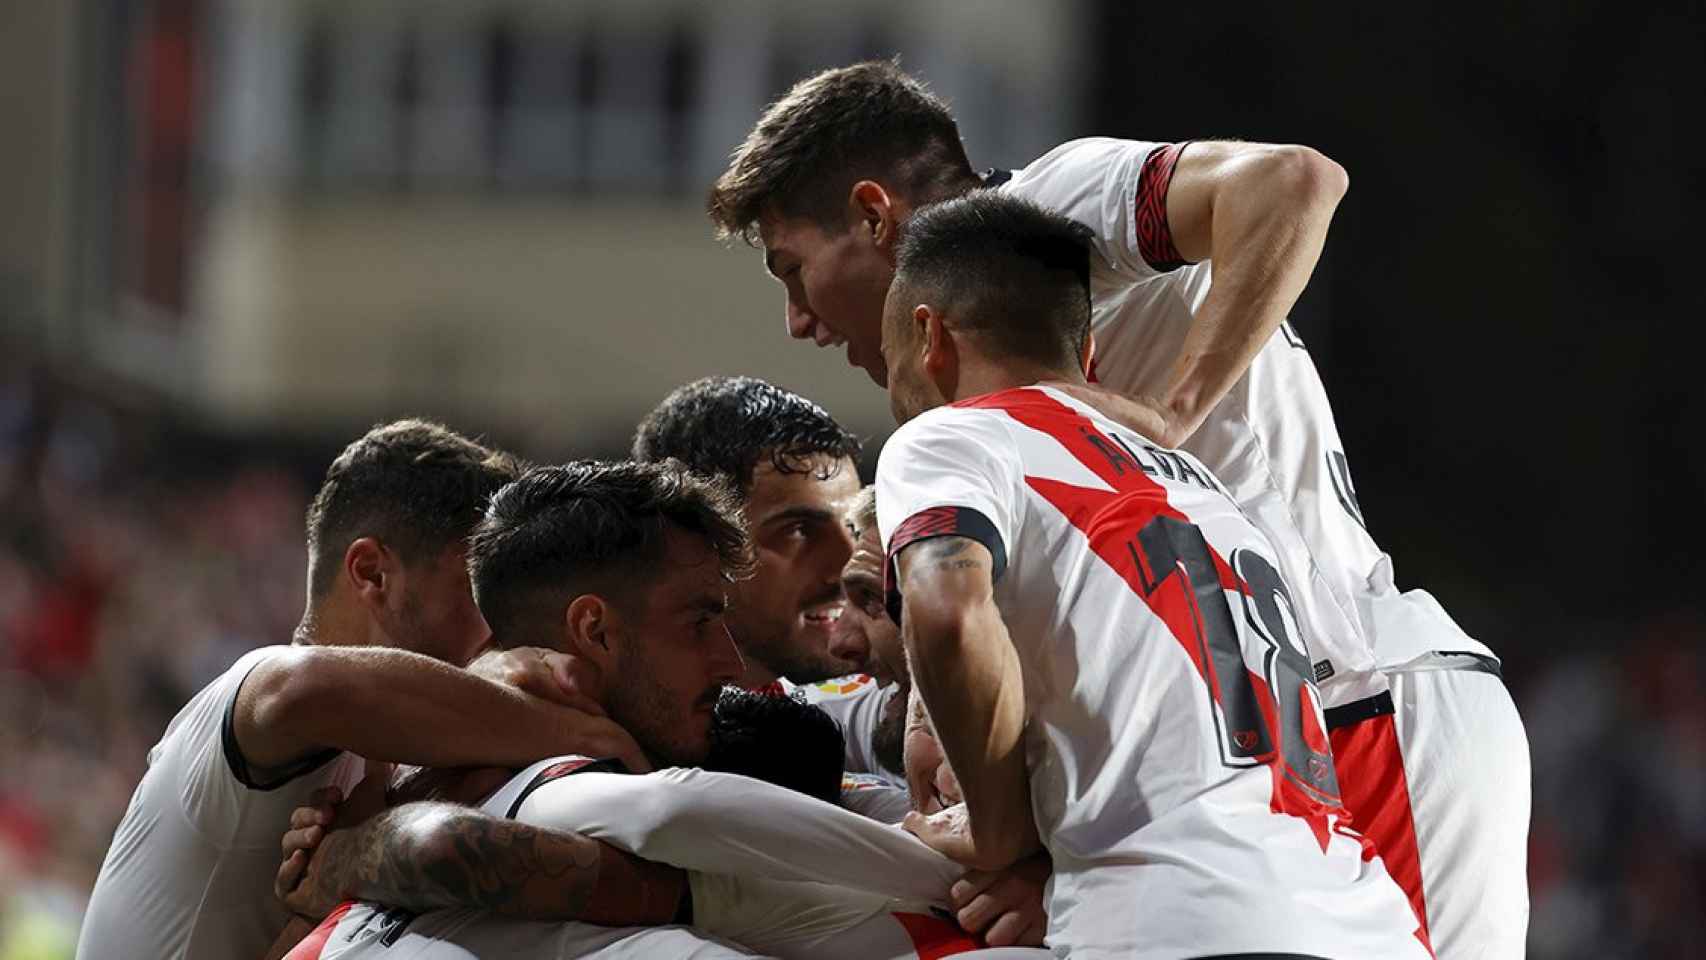 La euforia del Rayo Vallecano tras derrotar por la mínima al Barça / EFE